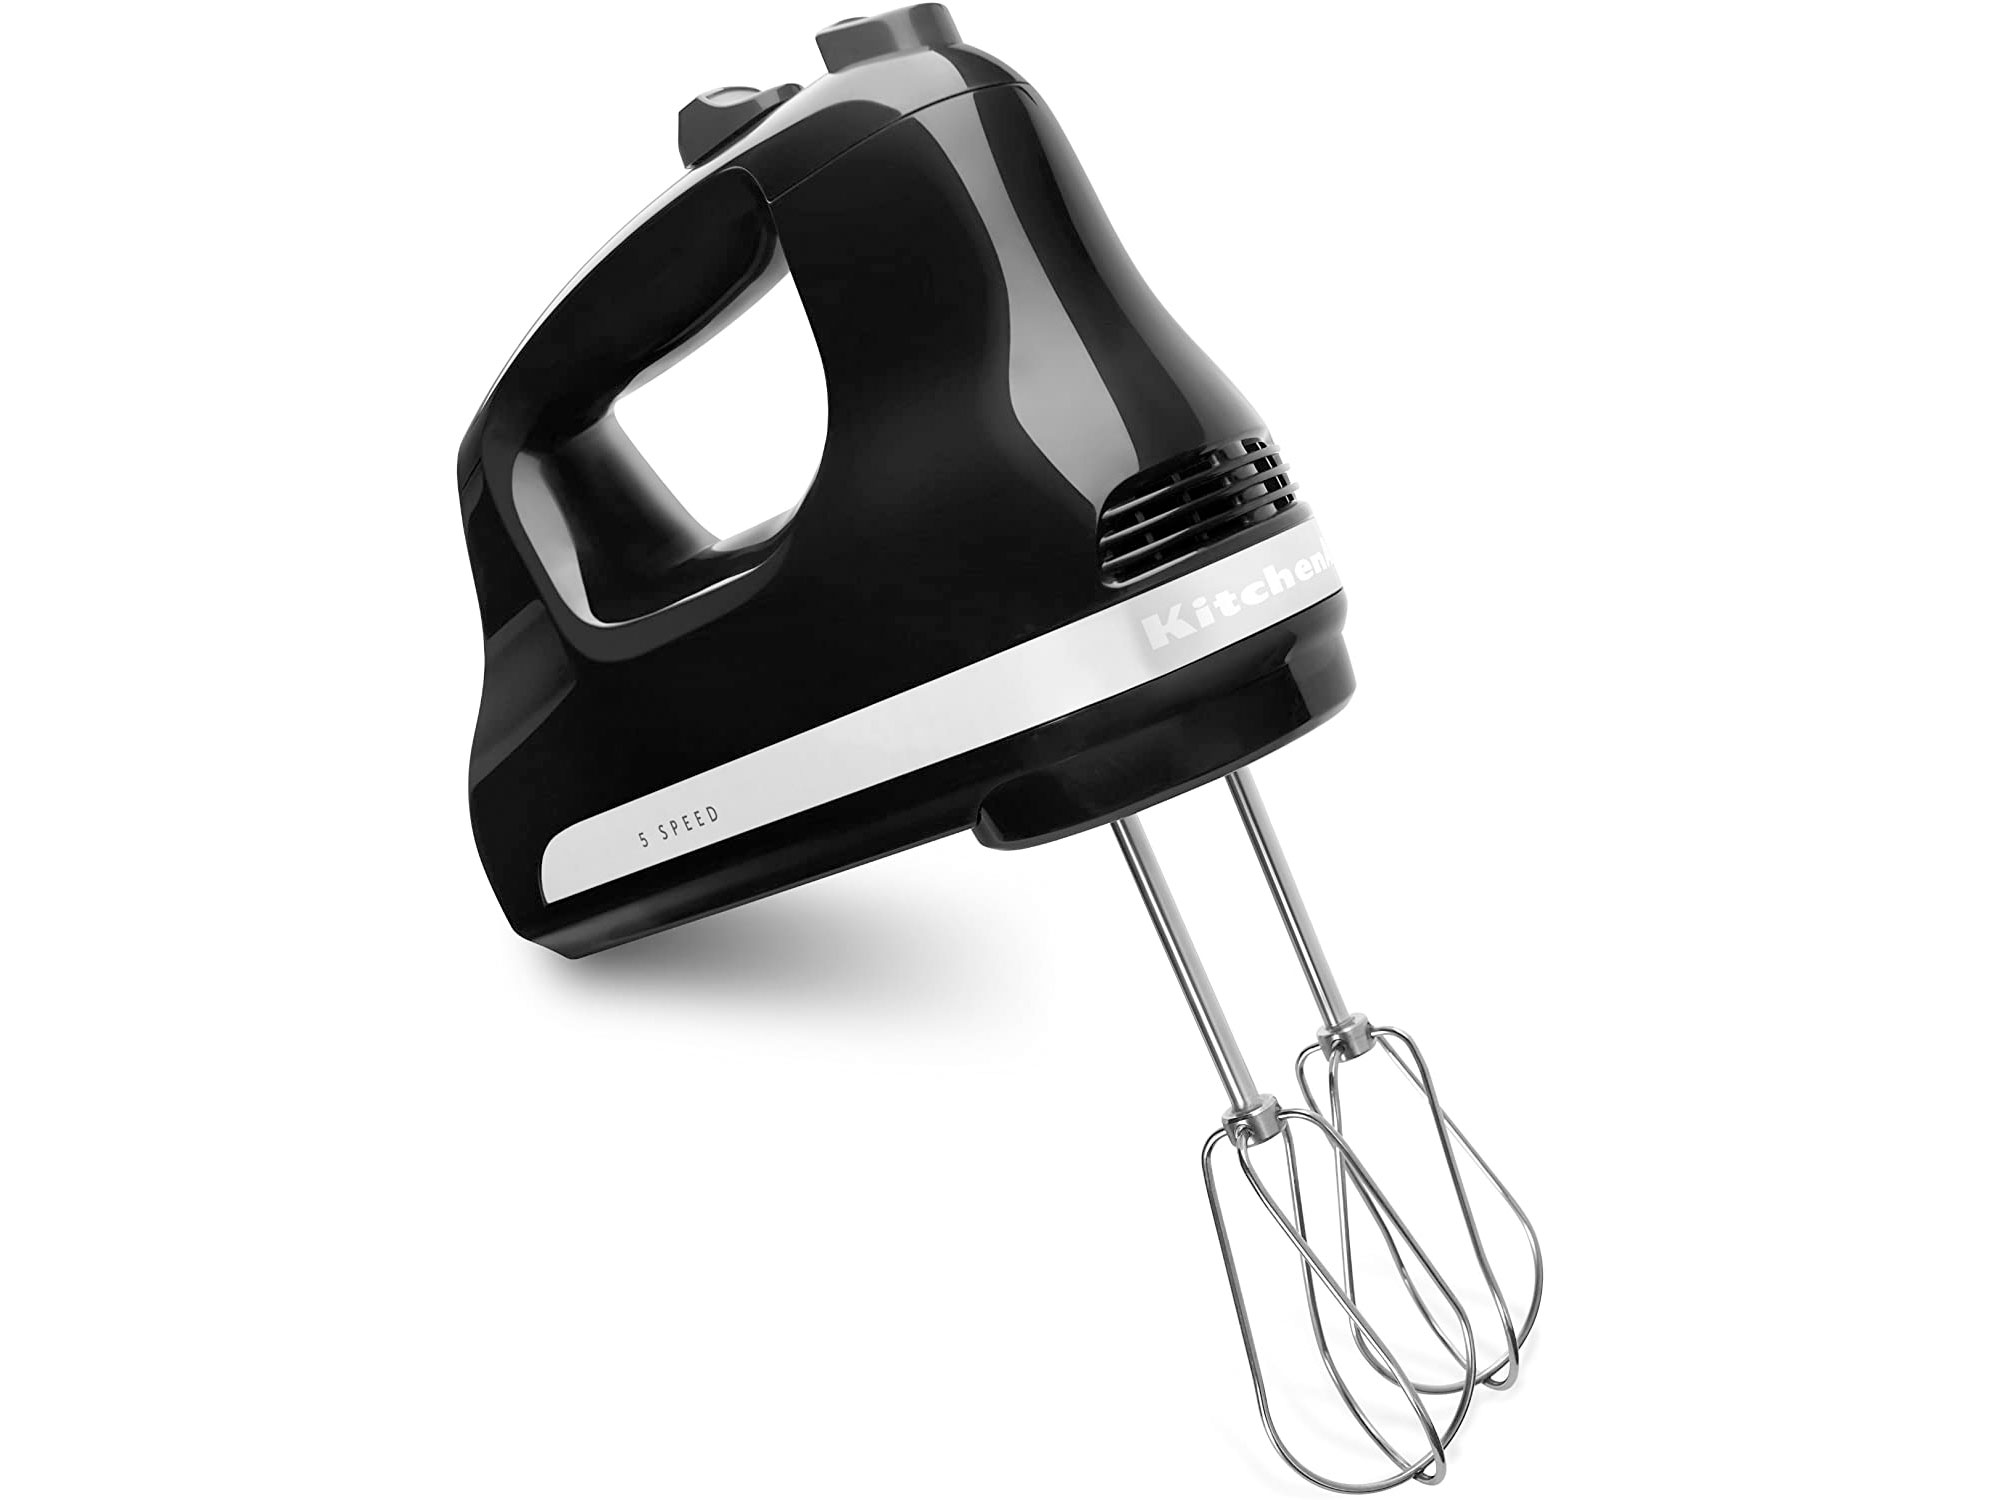 Amazon：KitchenAid 5-Speed Hand Mixer只賣$30